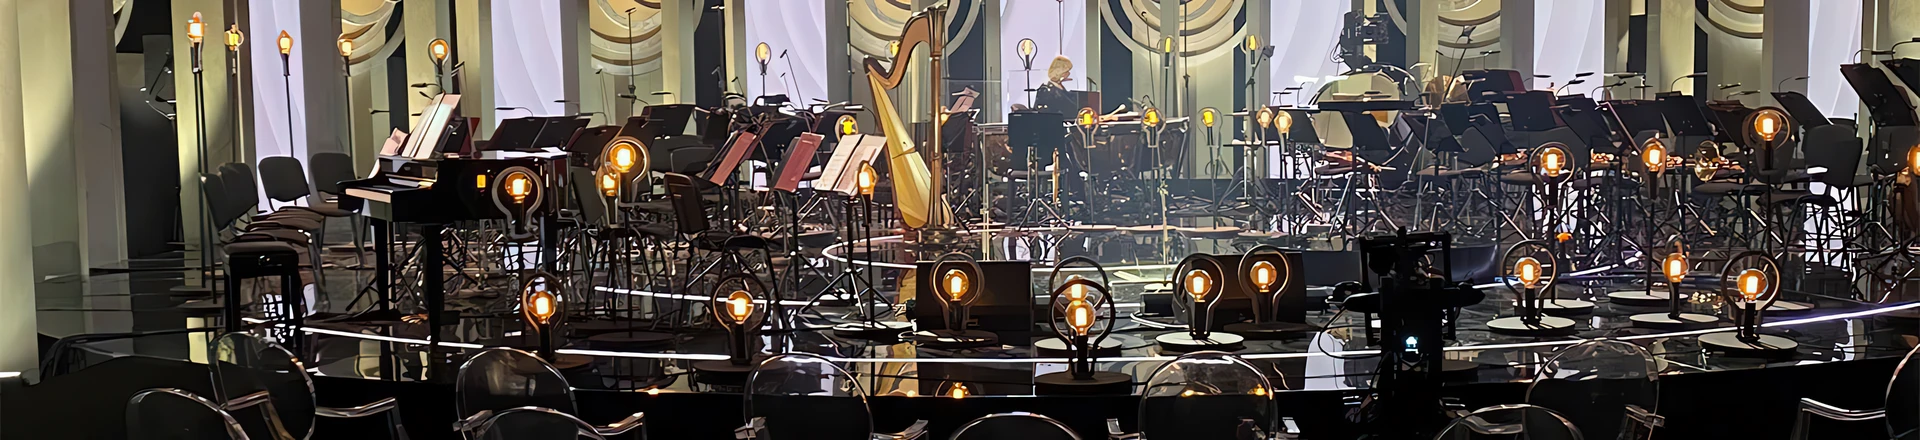 Koncert wielkanocny Andrea Bocelli zrealizowany na Vi7000